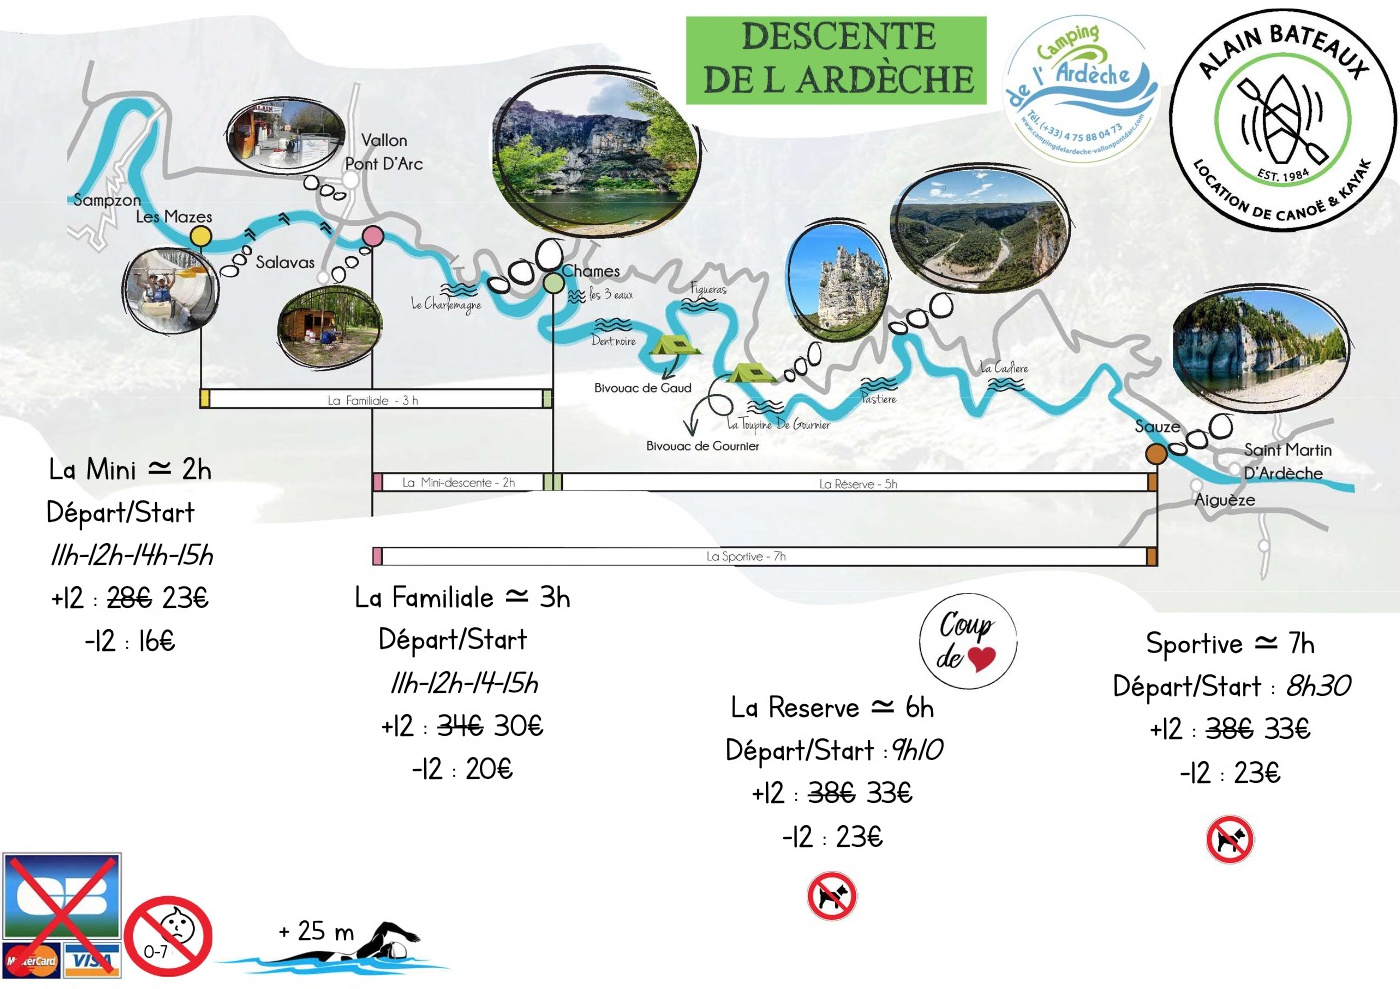 Vermietung von Kanus Abfahrt auf der Ardèche